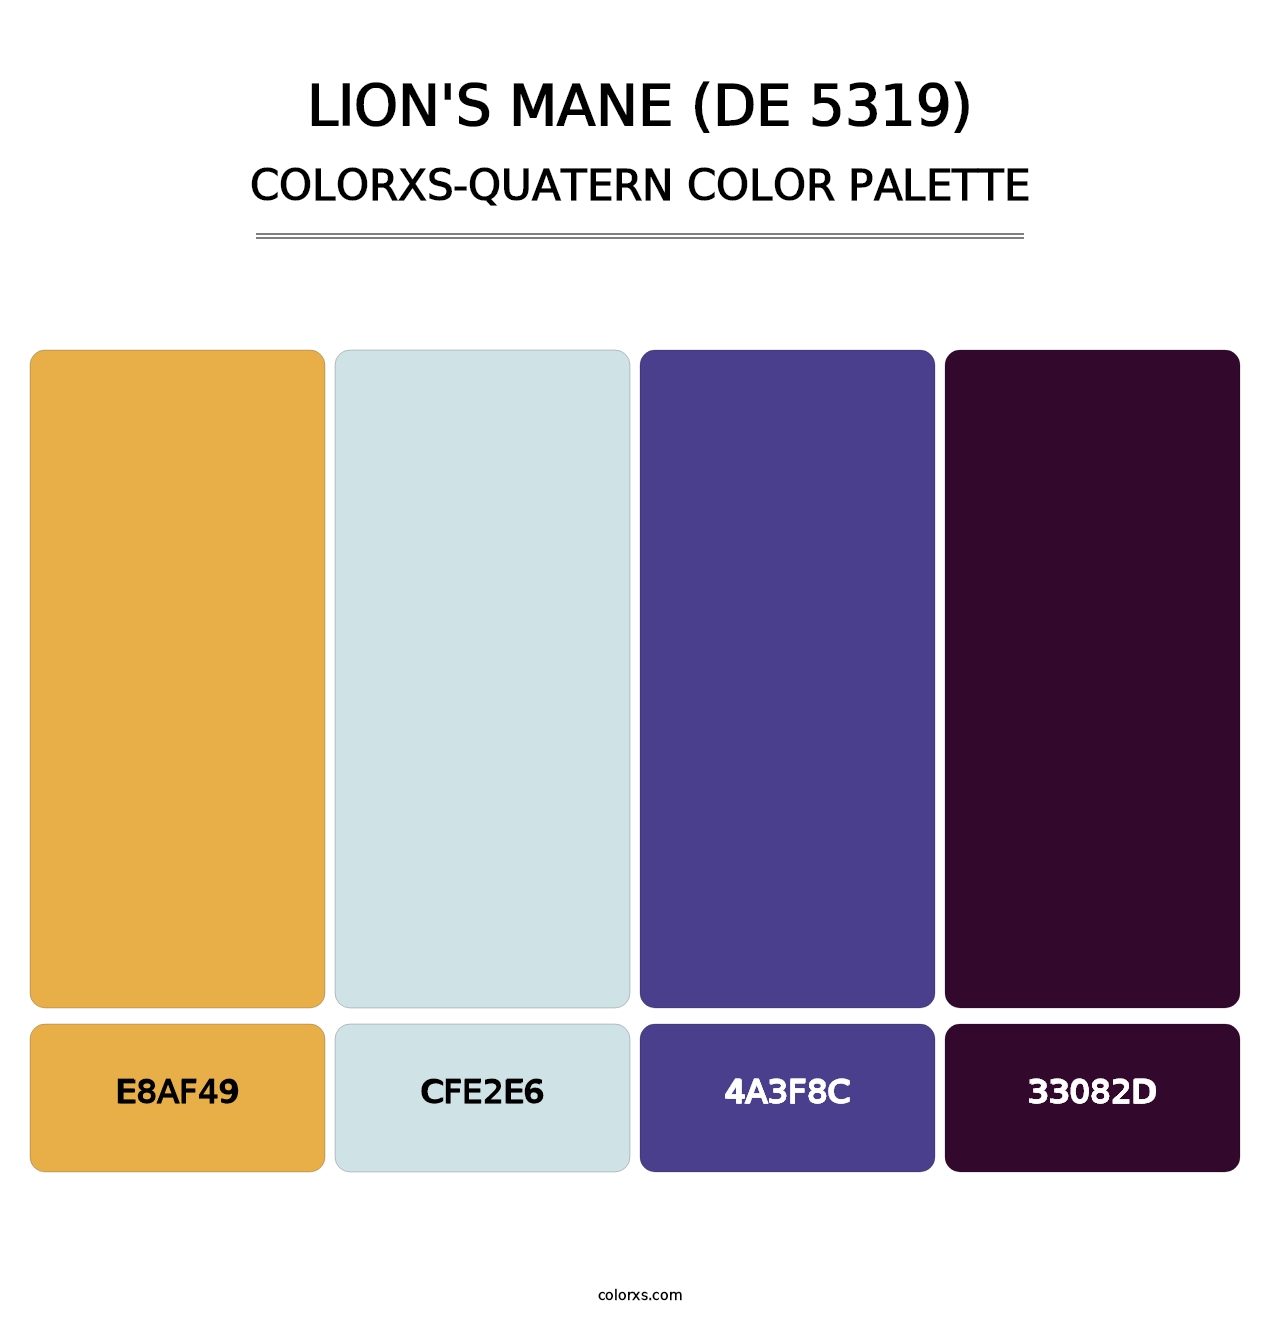 Lion's Mane (DE 5319) - Colorxs Quatern Palette